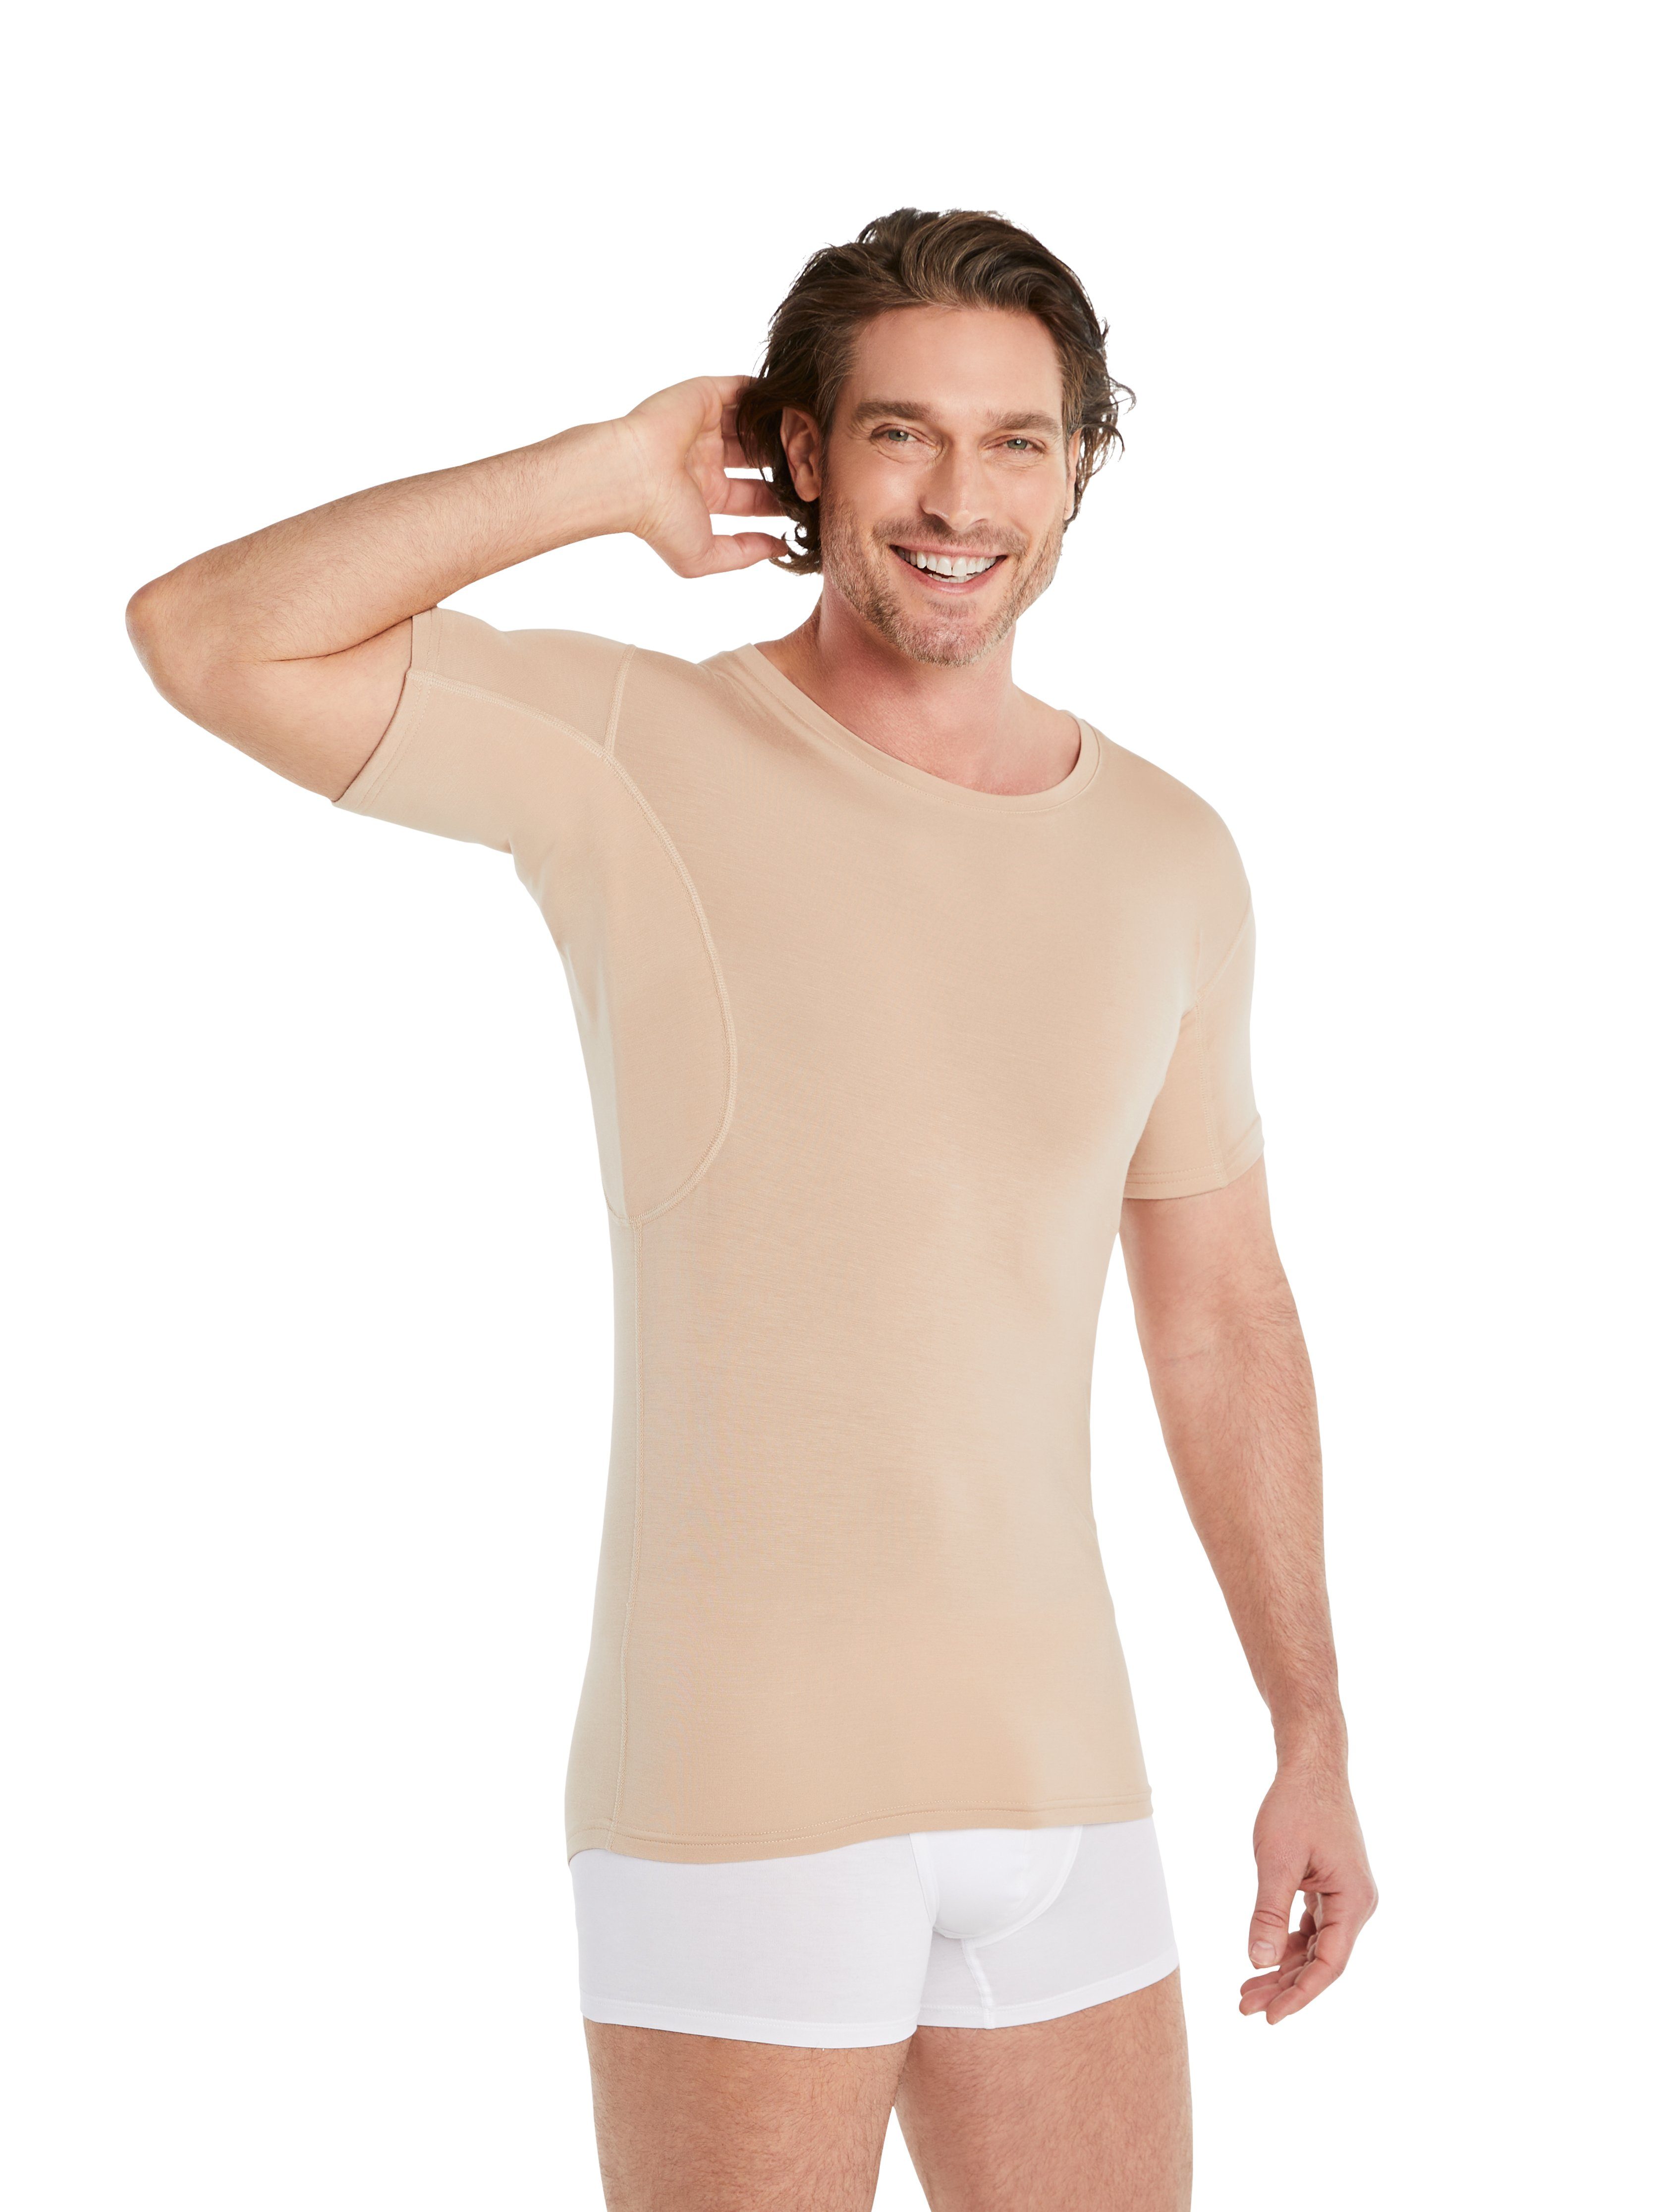 FINN Design Unterhemd Anti-Schweiß Unterhemd Herren mit Rundhals 100% Schutz vor Schweißflecken, garantierte Wirkung Light-Beige